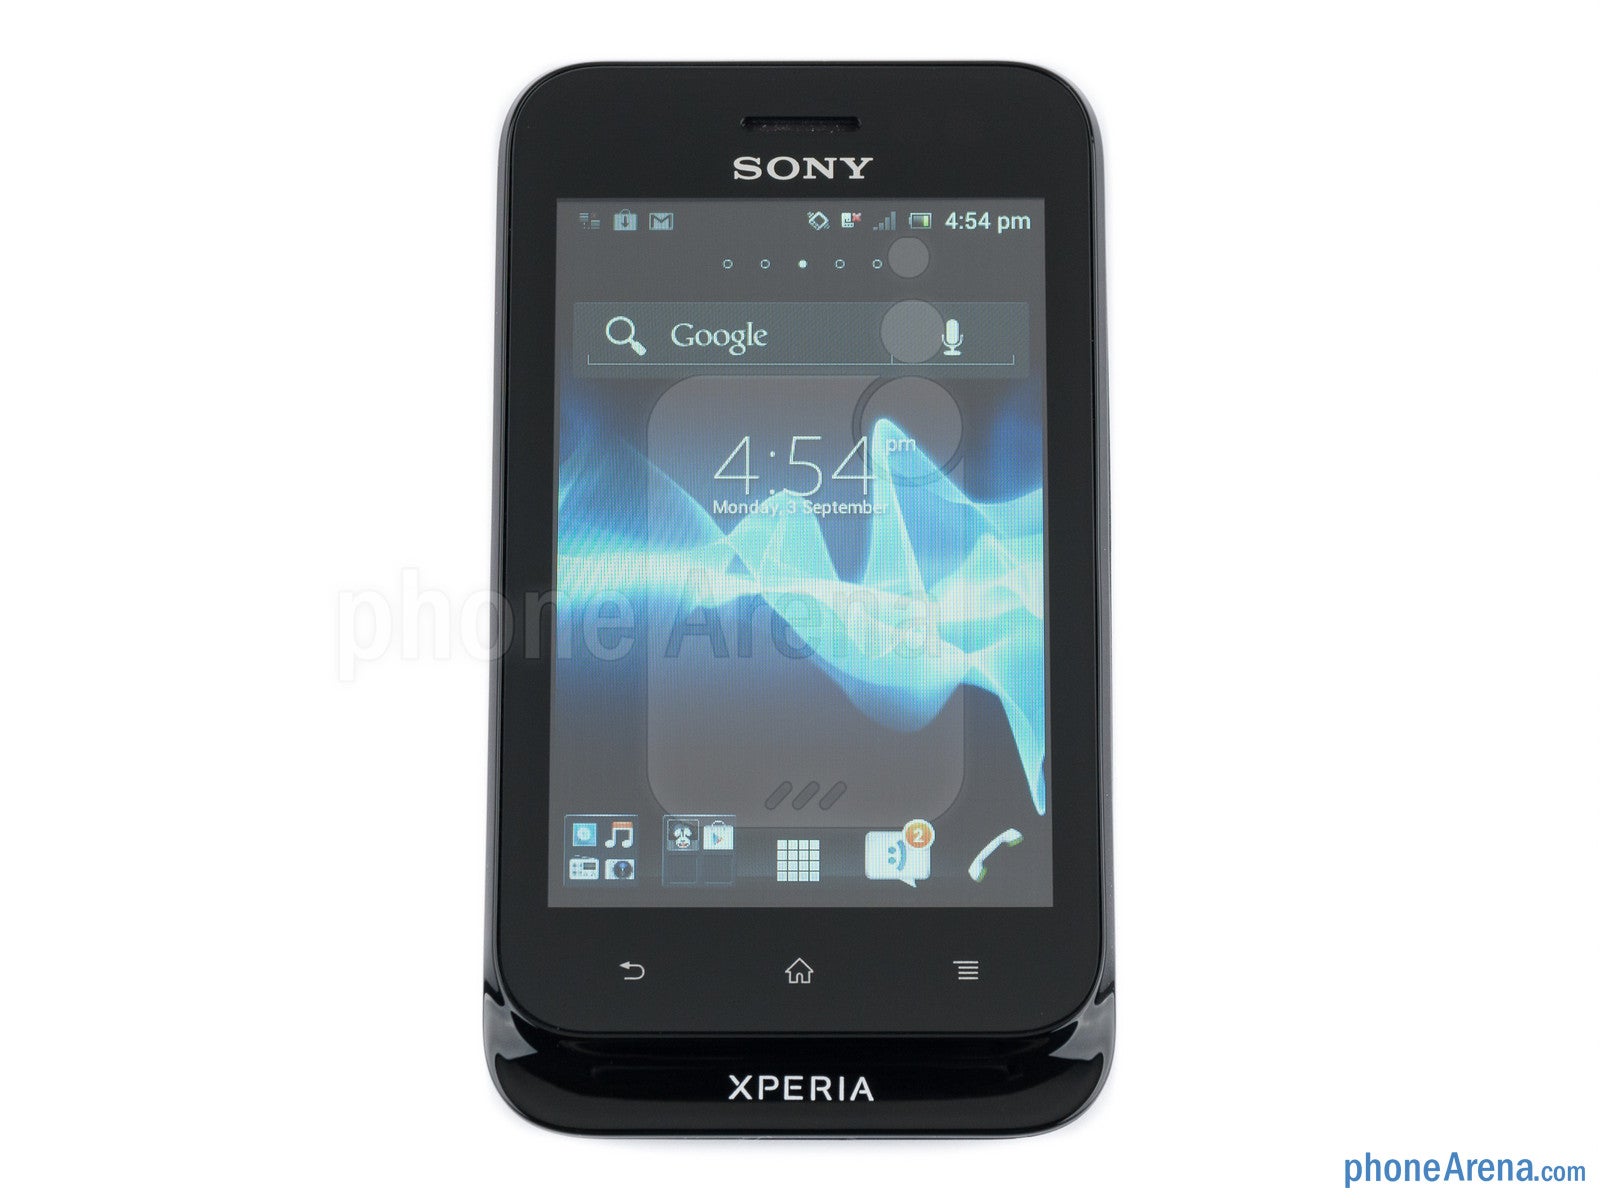 Teleurstelling Wonderbaarlijk Beschrijvend Sony Xperia tipo Review - PhoneArena